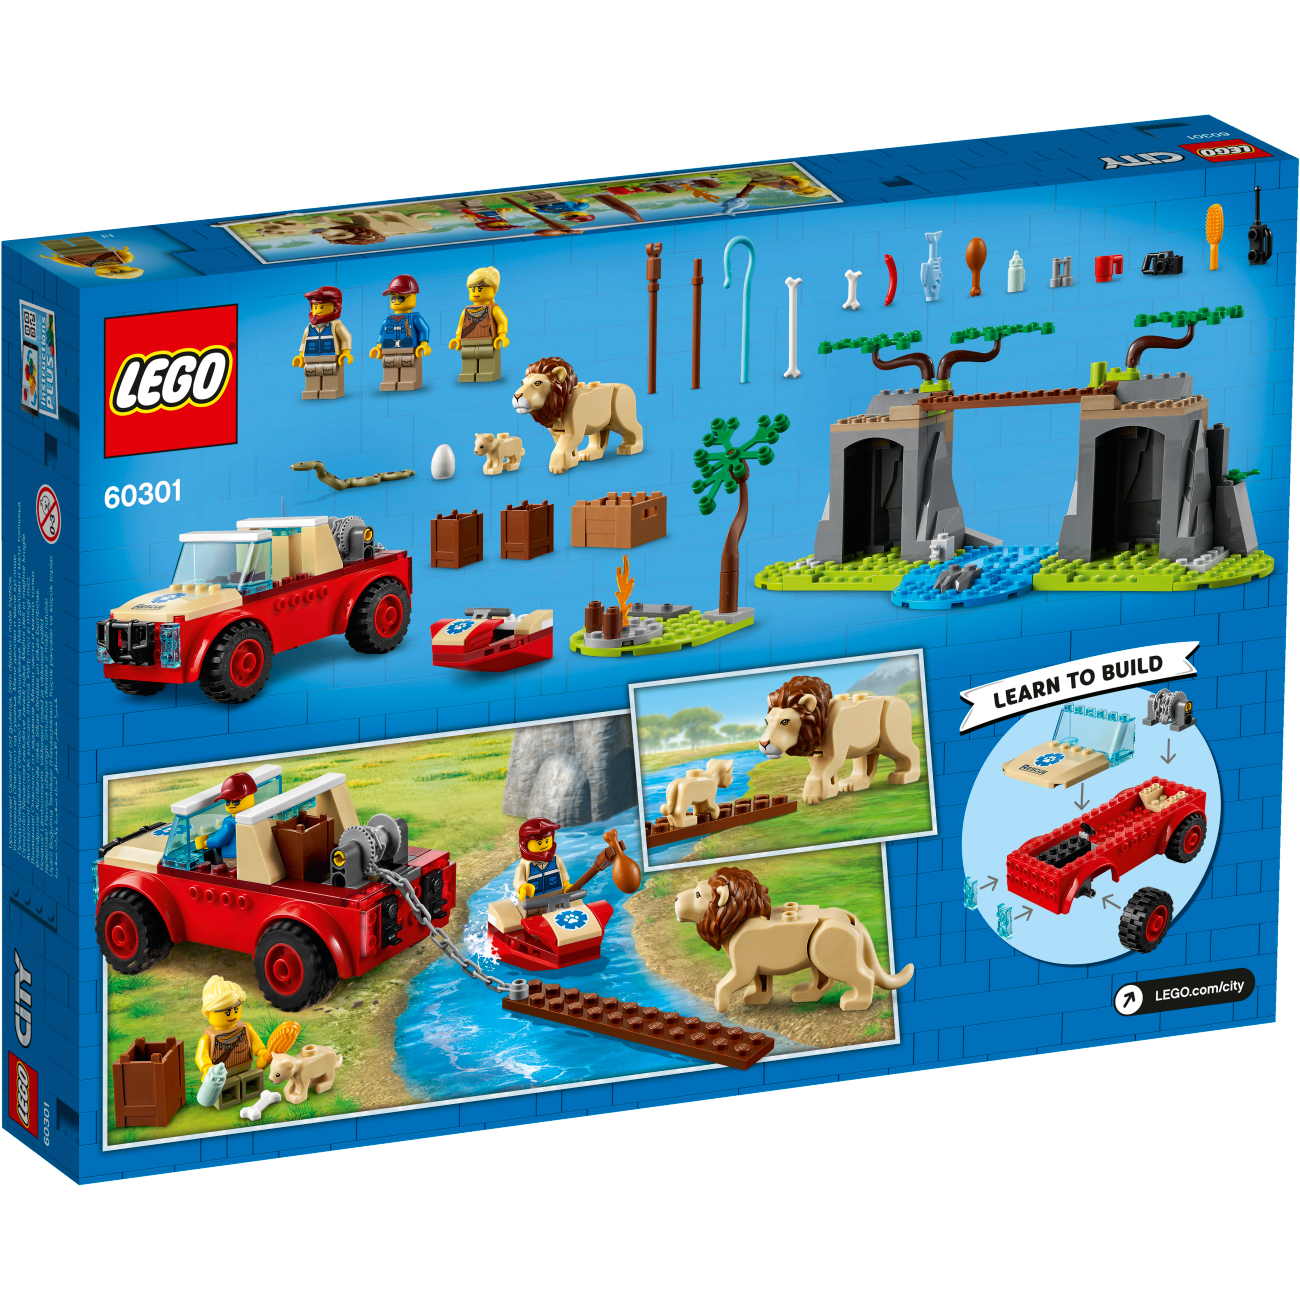 LEGO City 60301 - Tierrettungs-Geländewagen